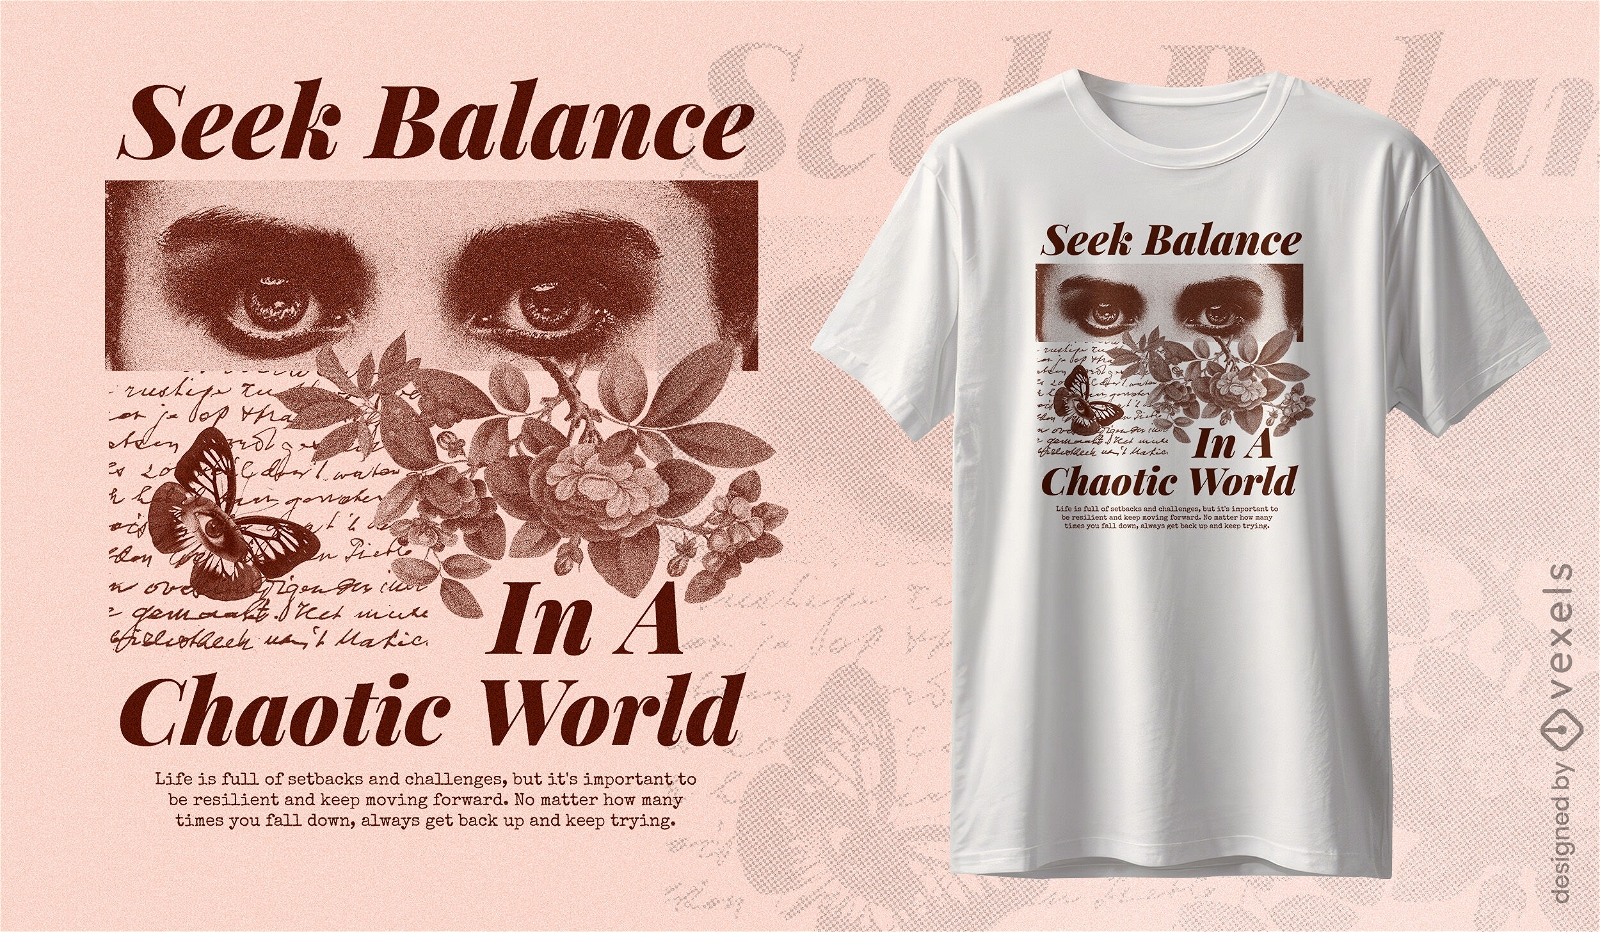 Seek balance in a chaotic world t-shirt design